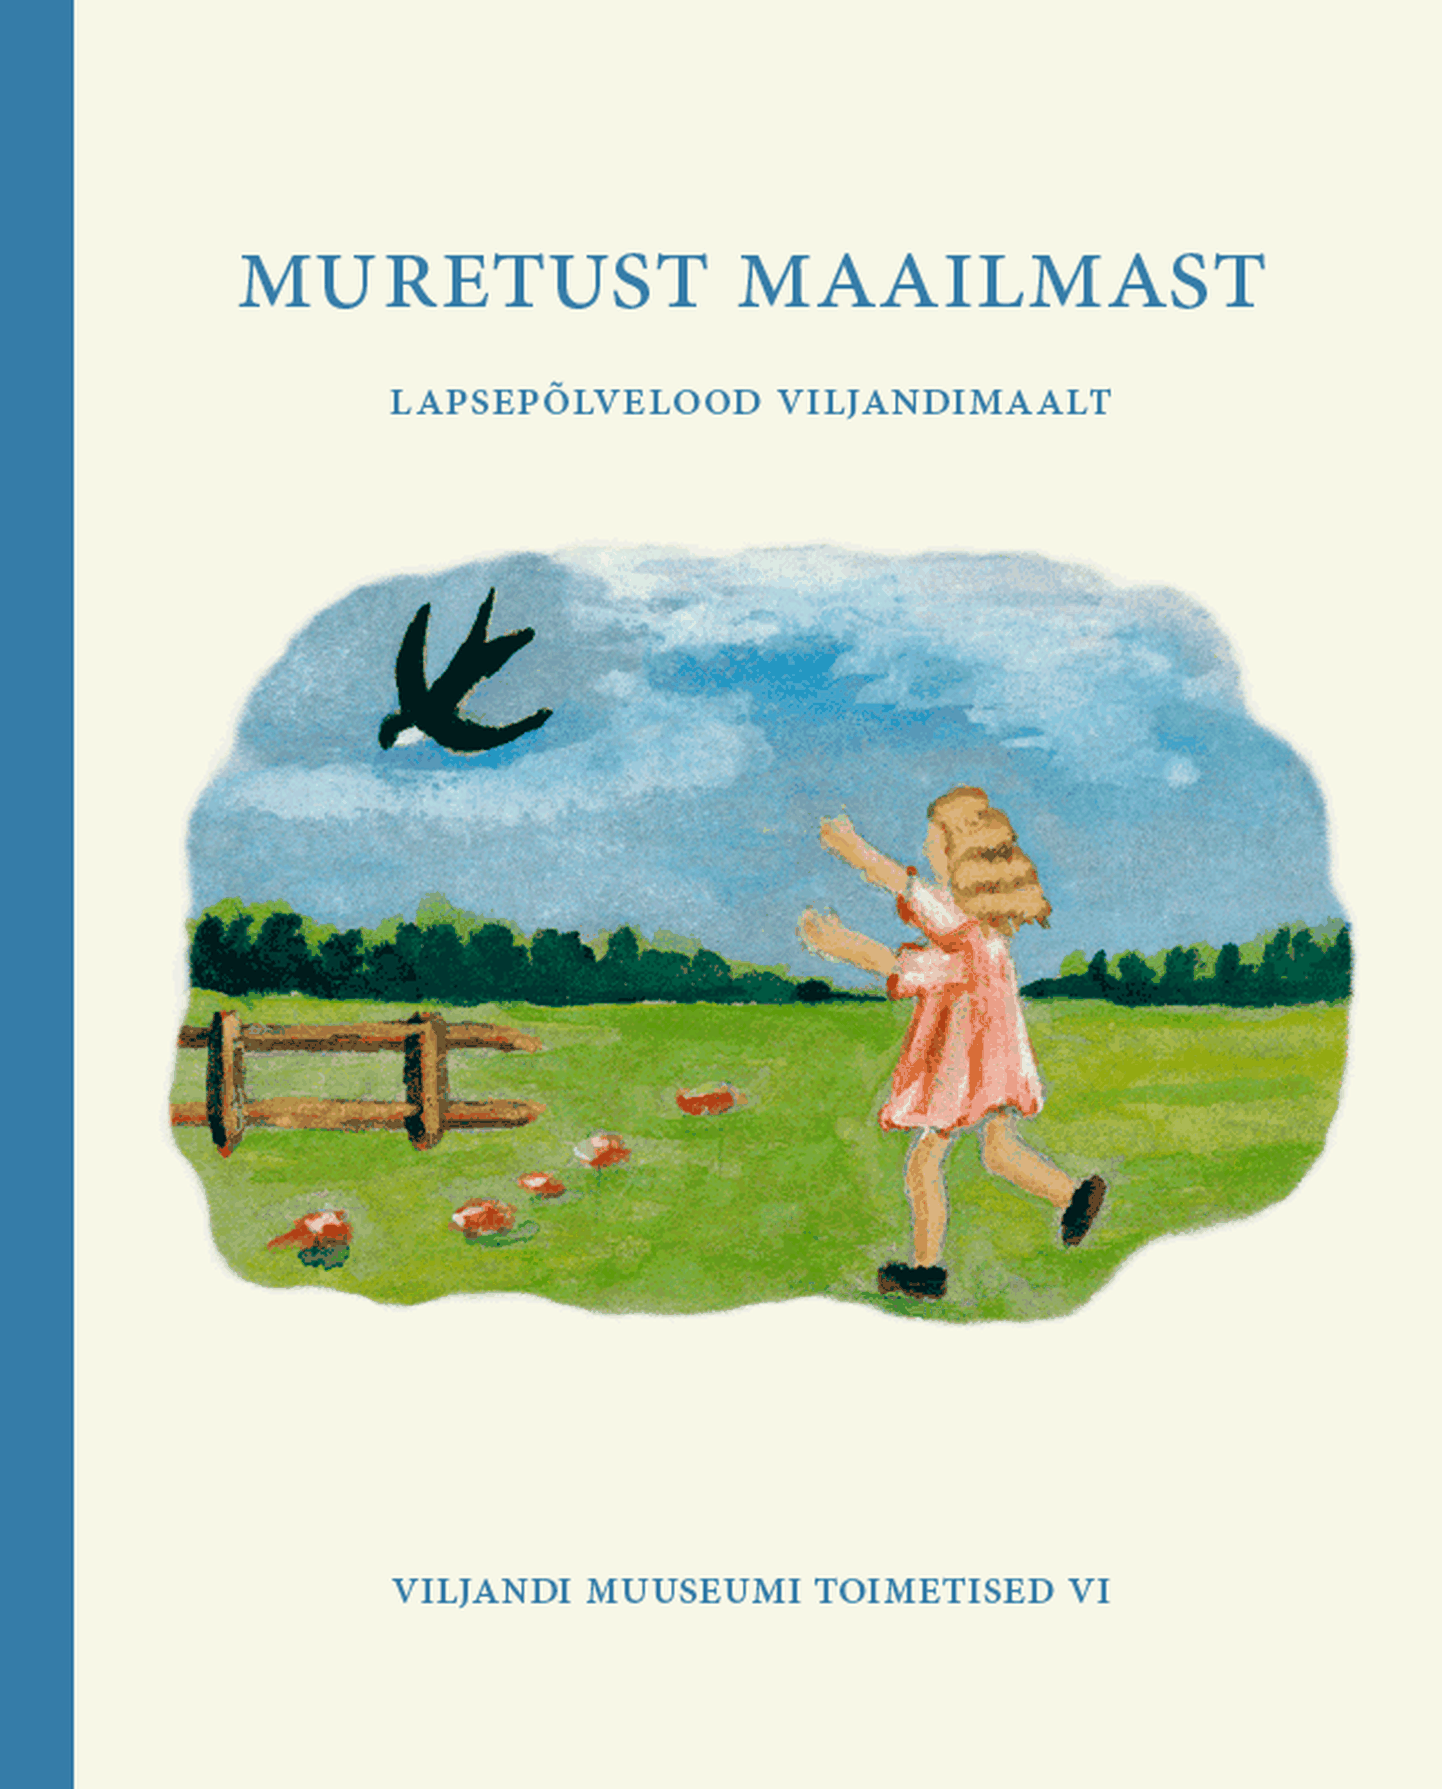 Viljandi muuseum esitleb 20. detsembril raamatut «Muretust maailmast. Lapsepõlvelood Viljandimaalt».